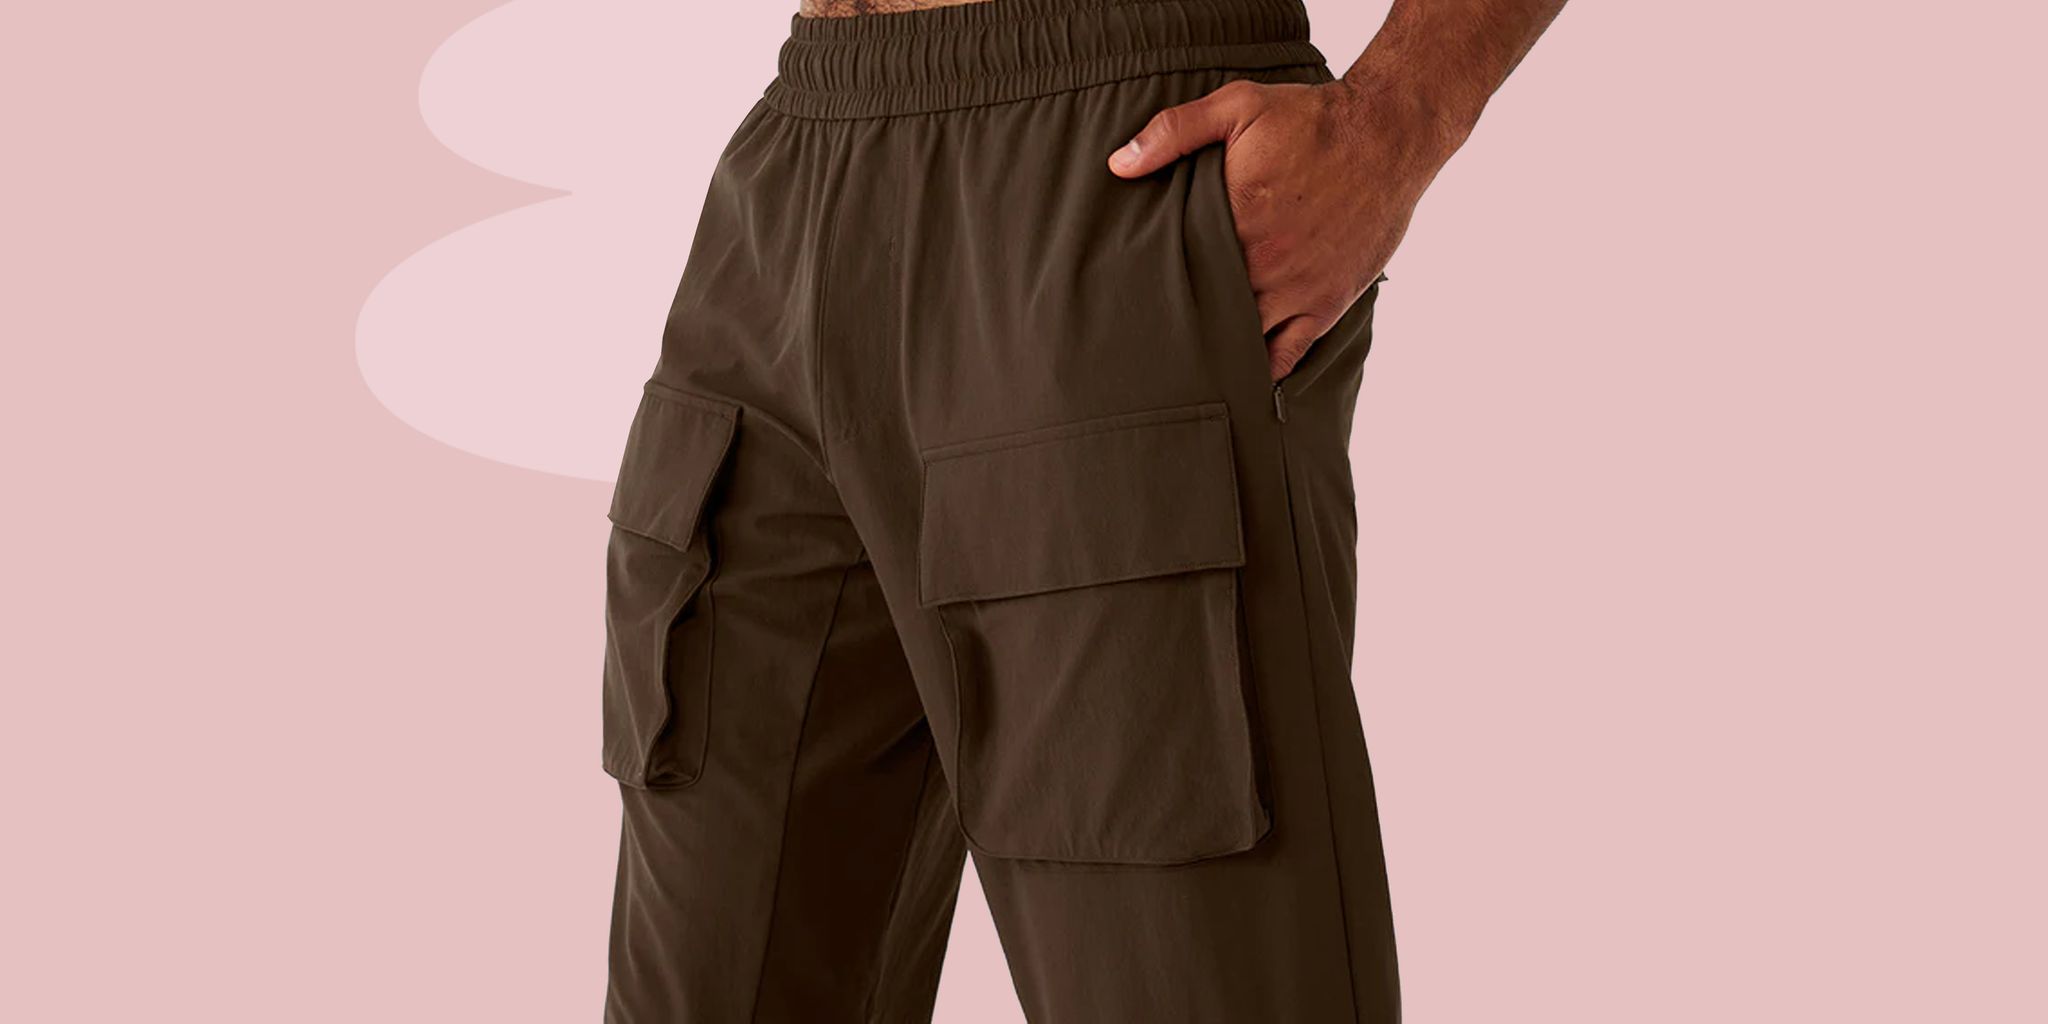 5 unisex ways to style cargo pants